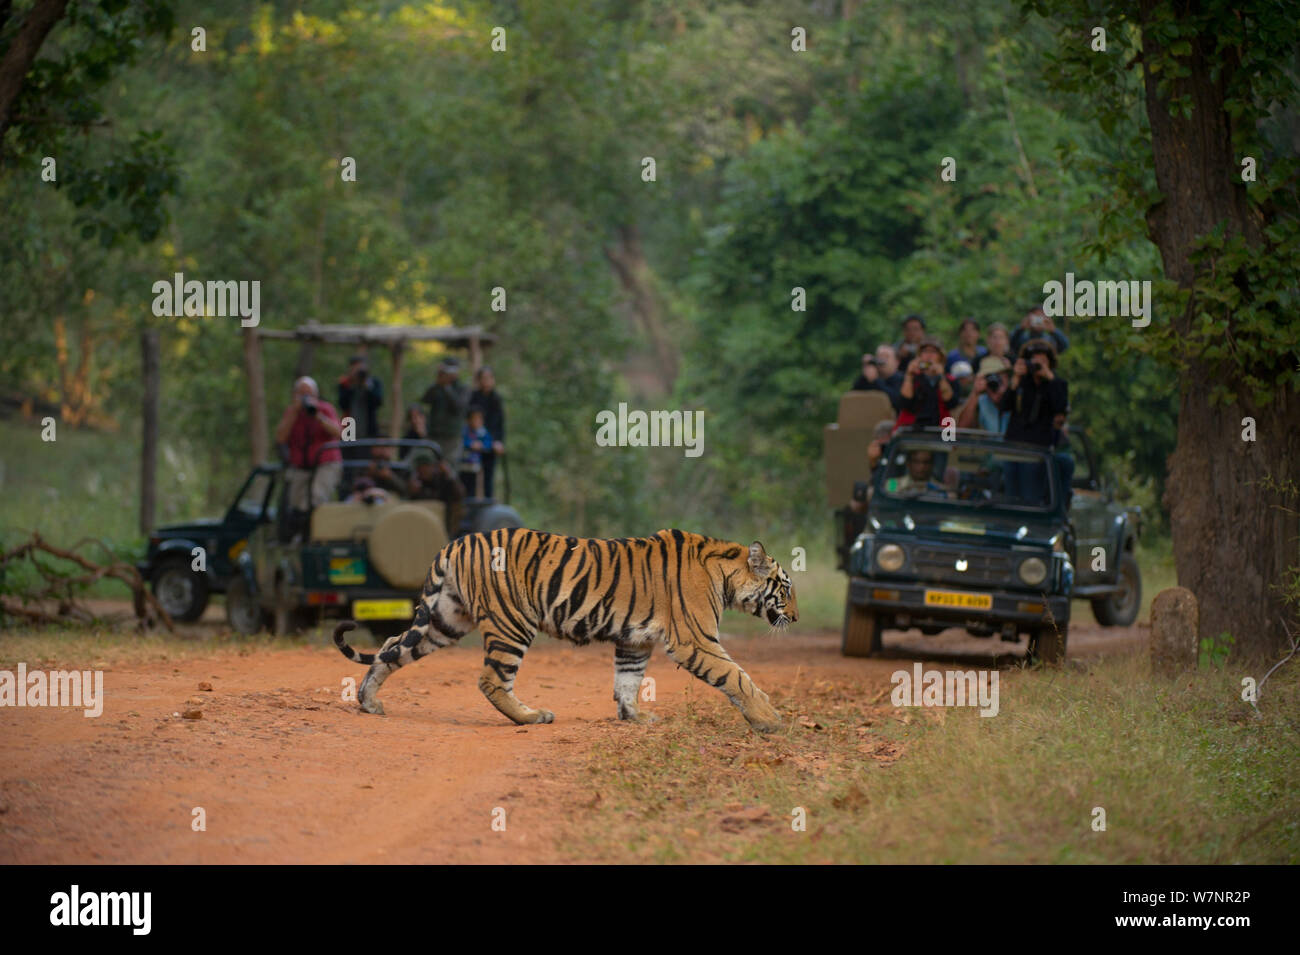 Bengal Tiger (Panthera tigris) Sub-erwachsenes Weibchen, ca. 10-14 Monate alt, Kreuze Straße, während von Touristen fotografiert werden. Gefährdet. Bandhavgarh Nationalpark, Indien. Nicht-ex. Stockfoto